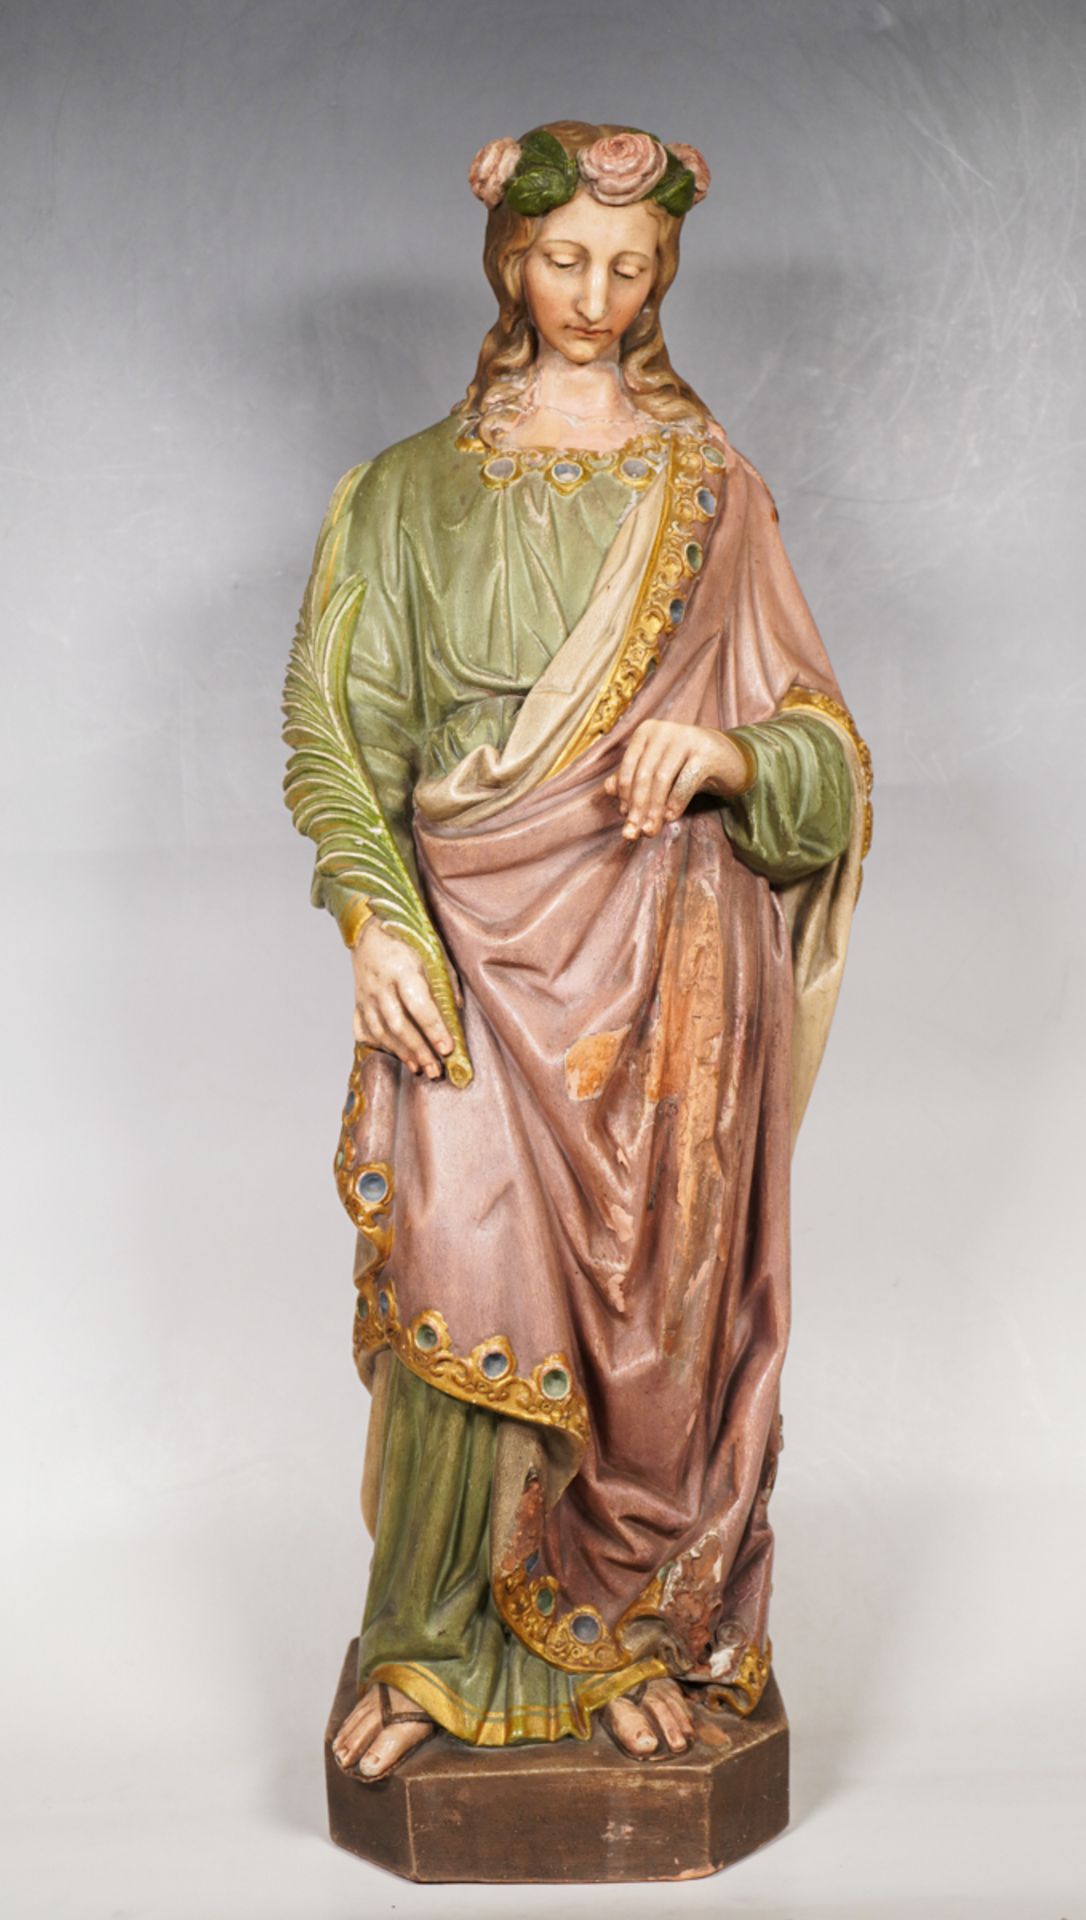 Heilige Filomena mit Palmenzweig und Rosenkranz im Haar